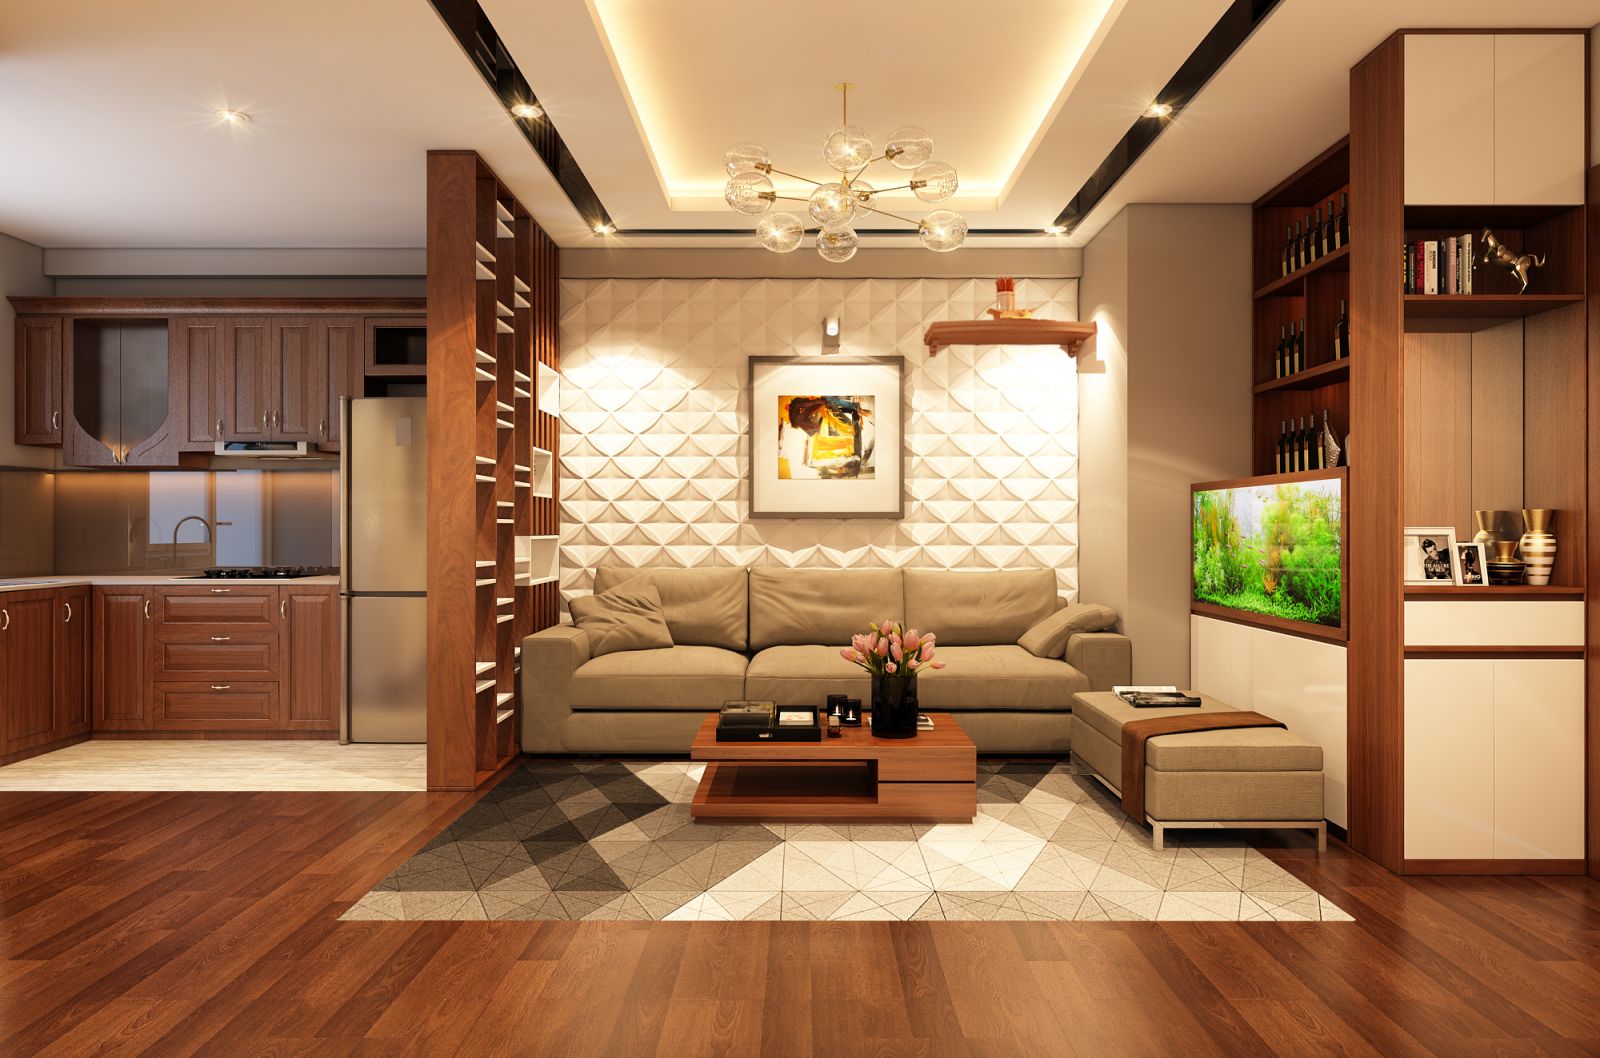  thiết kế nội thất chung cư phòng khách